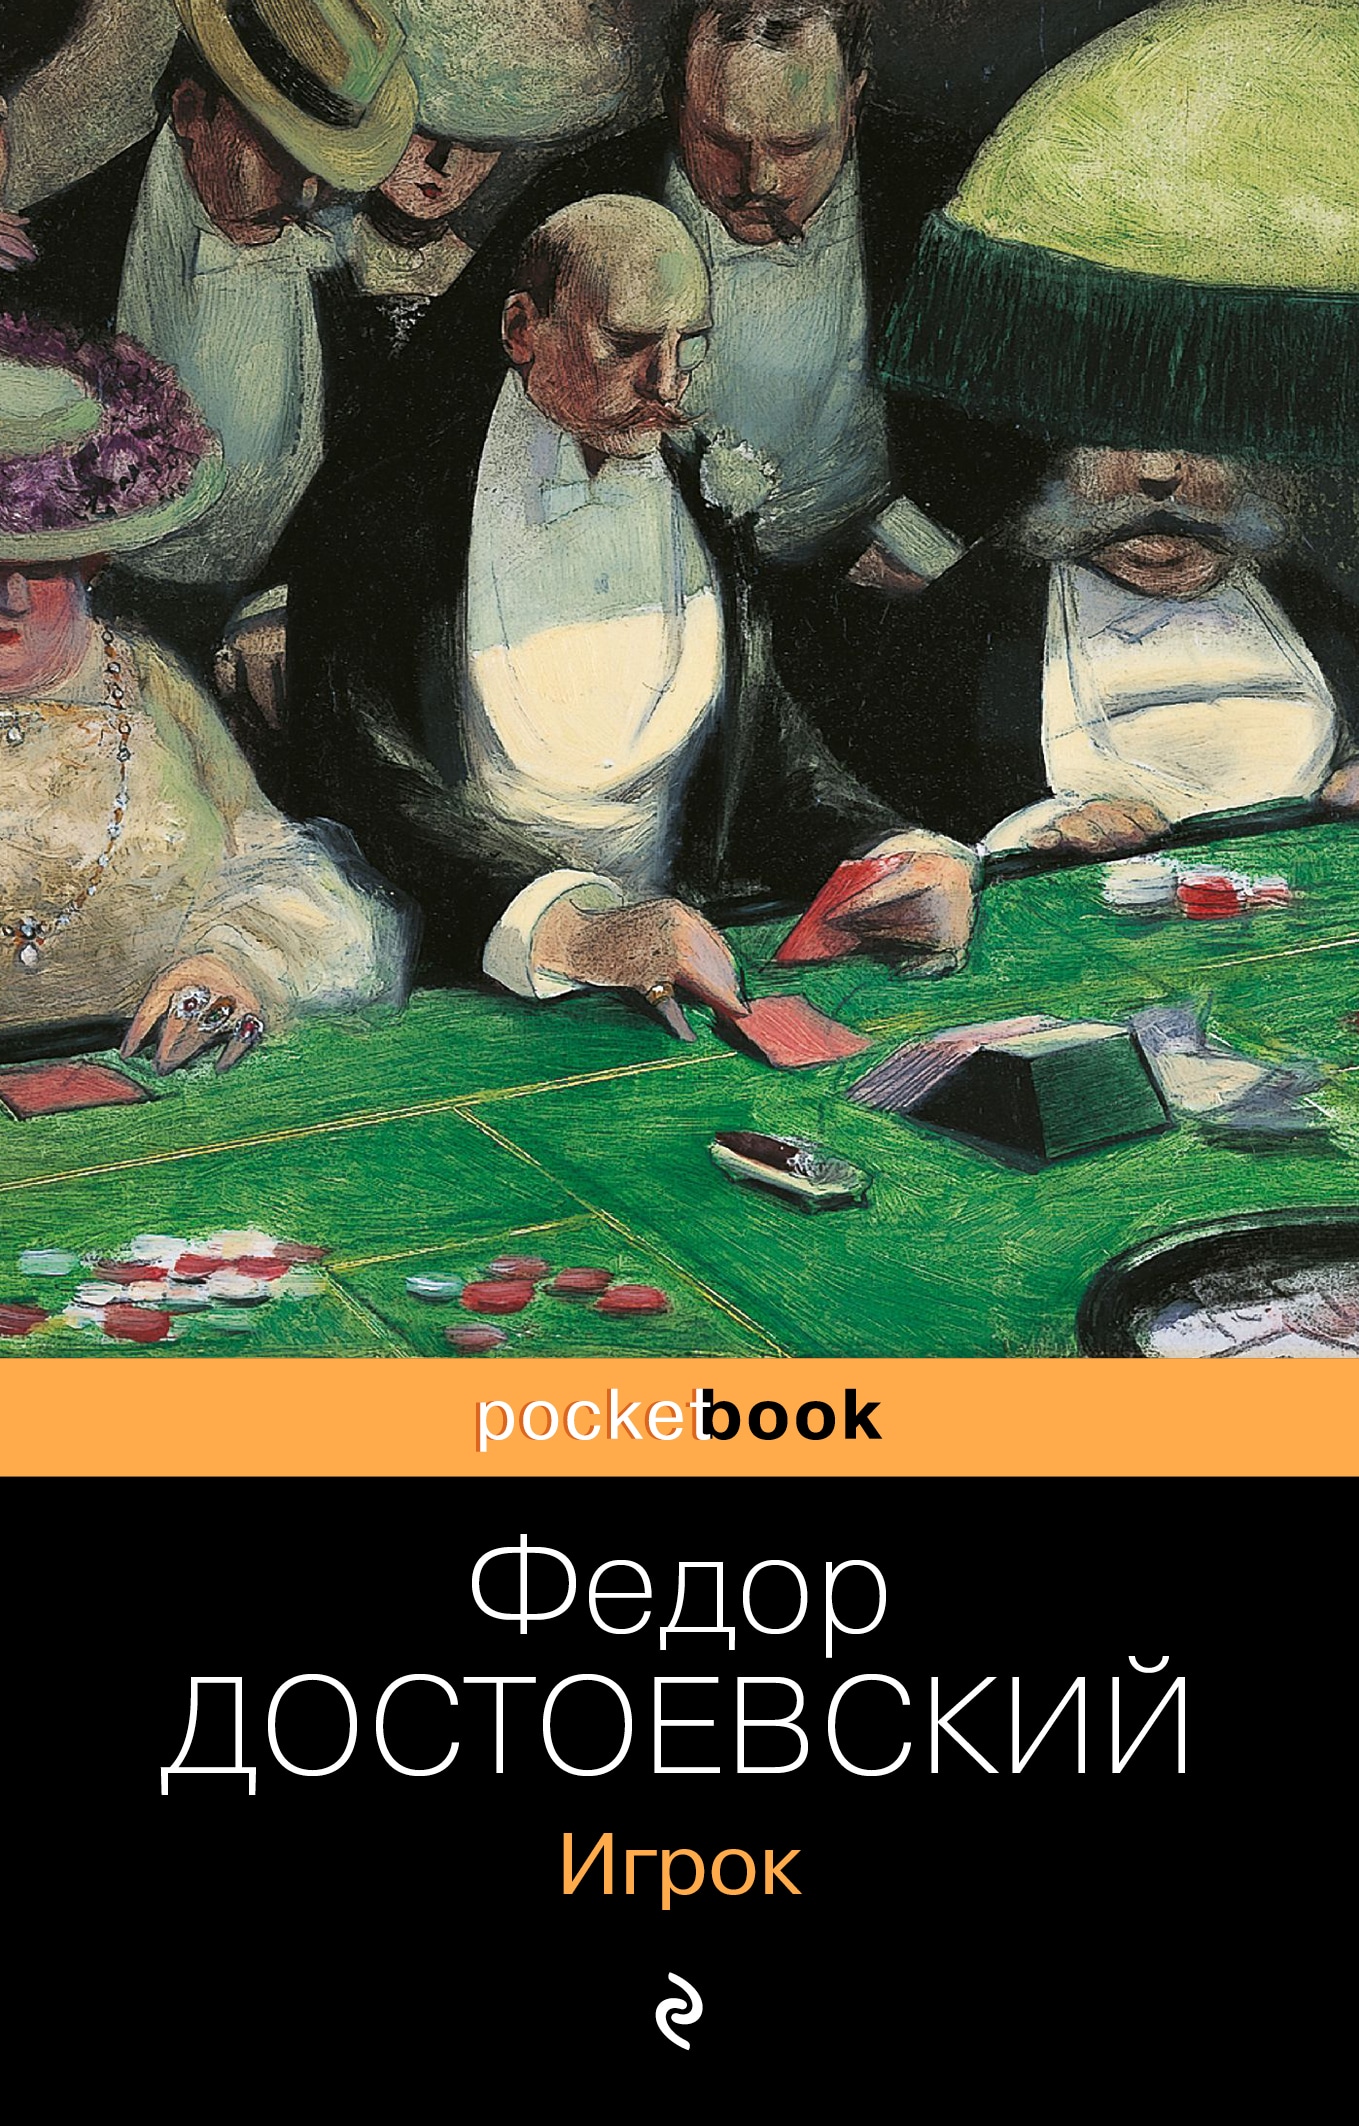 Книга «Игрок» Федор Достоевский — 21 октября 2021 г.